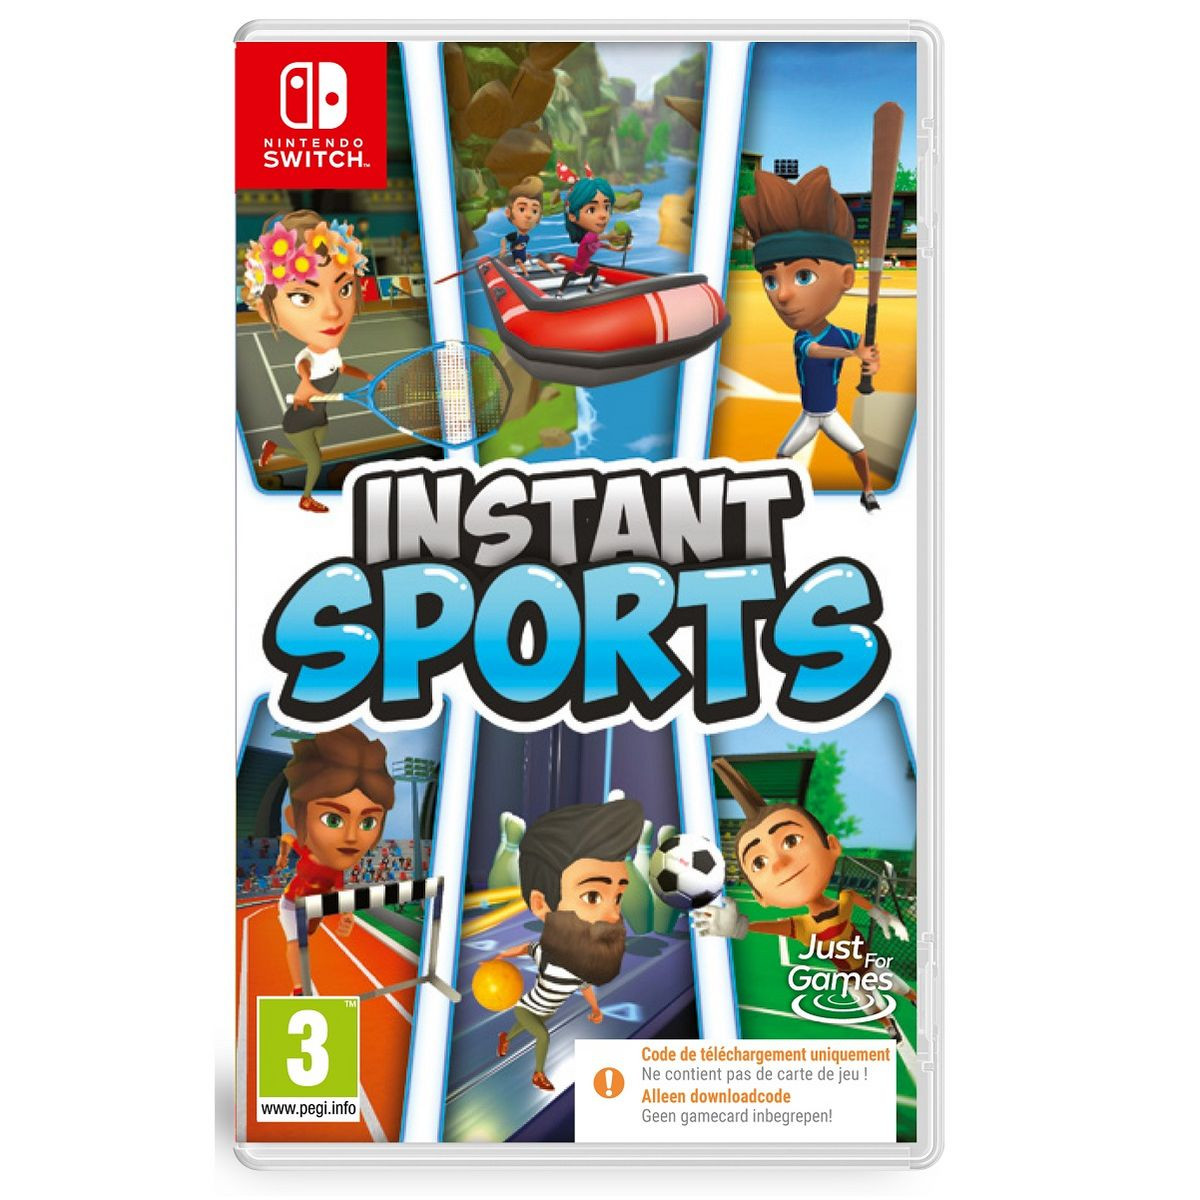 Jeu Nintendo Switch - 30 Sport Games in 1 - Sport - En boîte